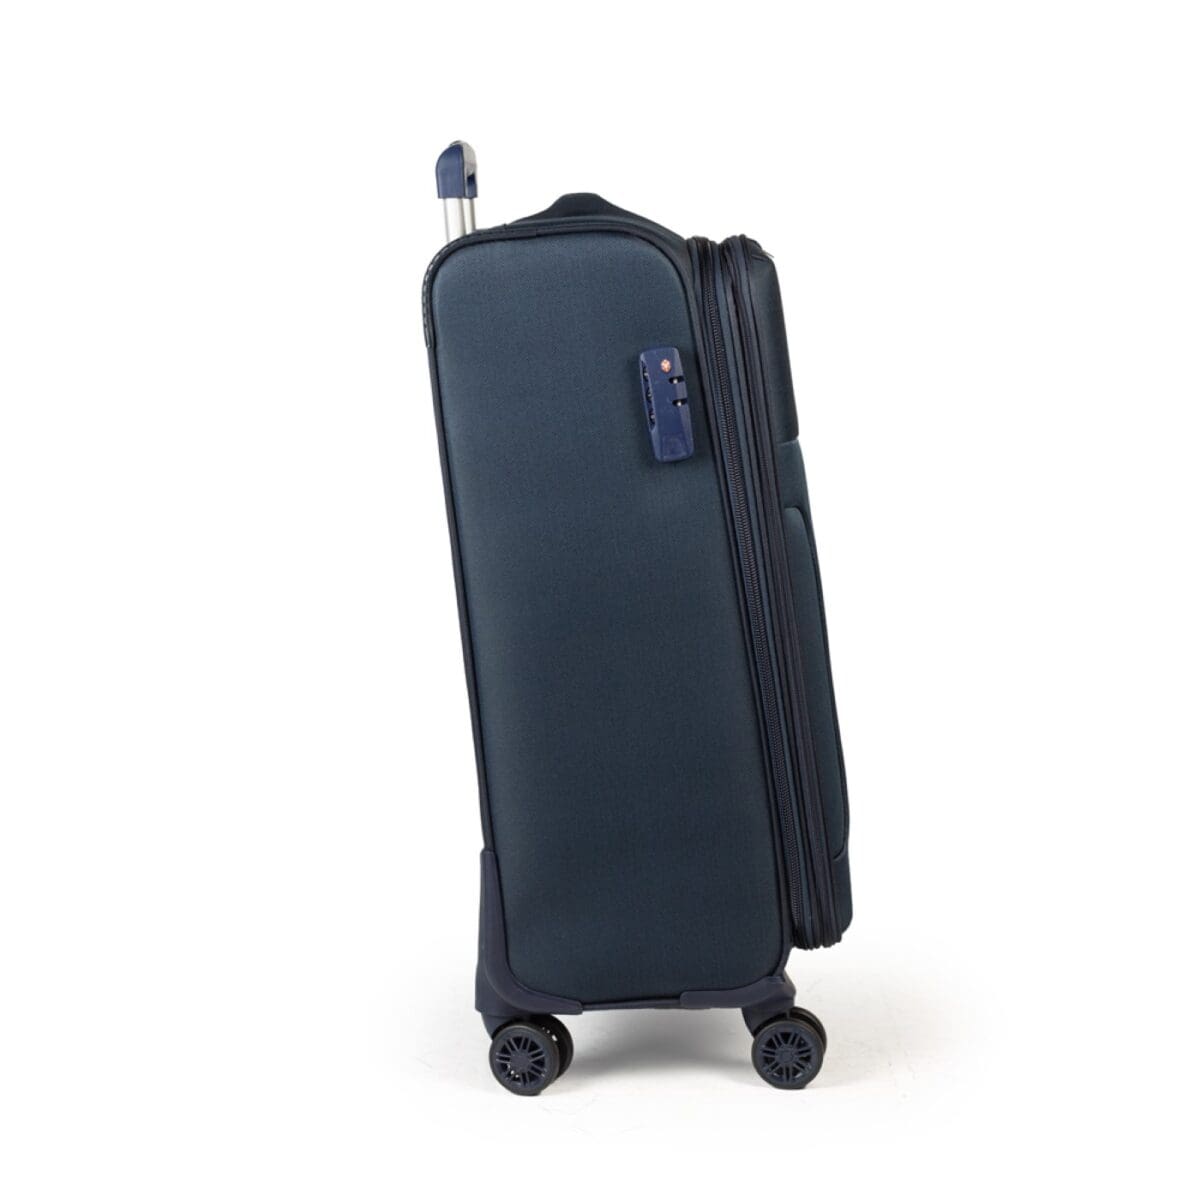 Δεξιά πλευρά βαλίτσας με κλειδαριά σε μπλε χρώμα